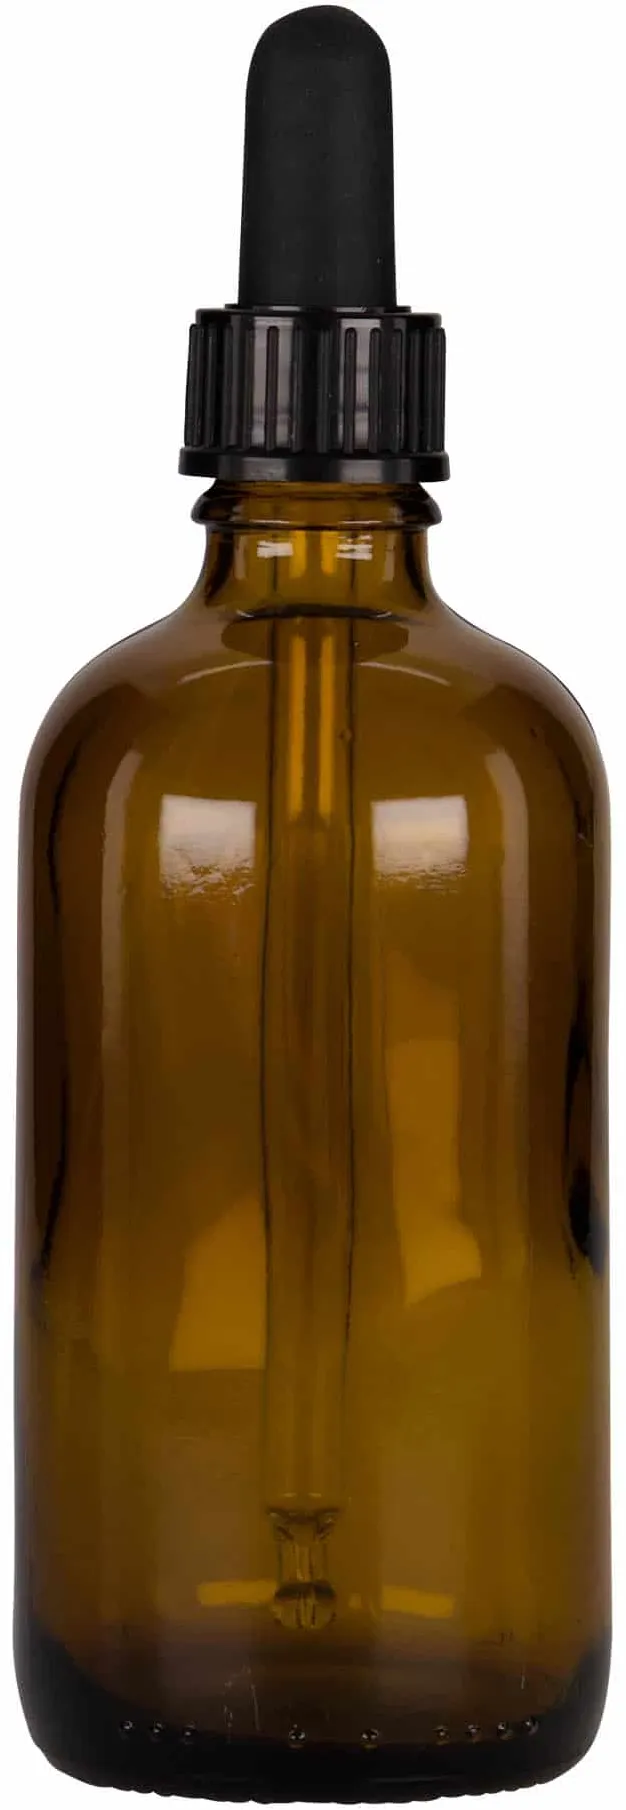 Flacon compte-gouttes médical 100 ml, verre, brun-noir, bouchage: DIN 18